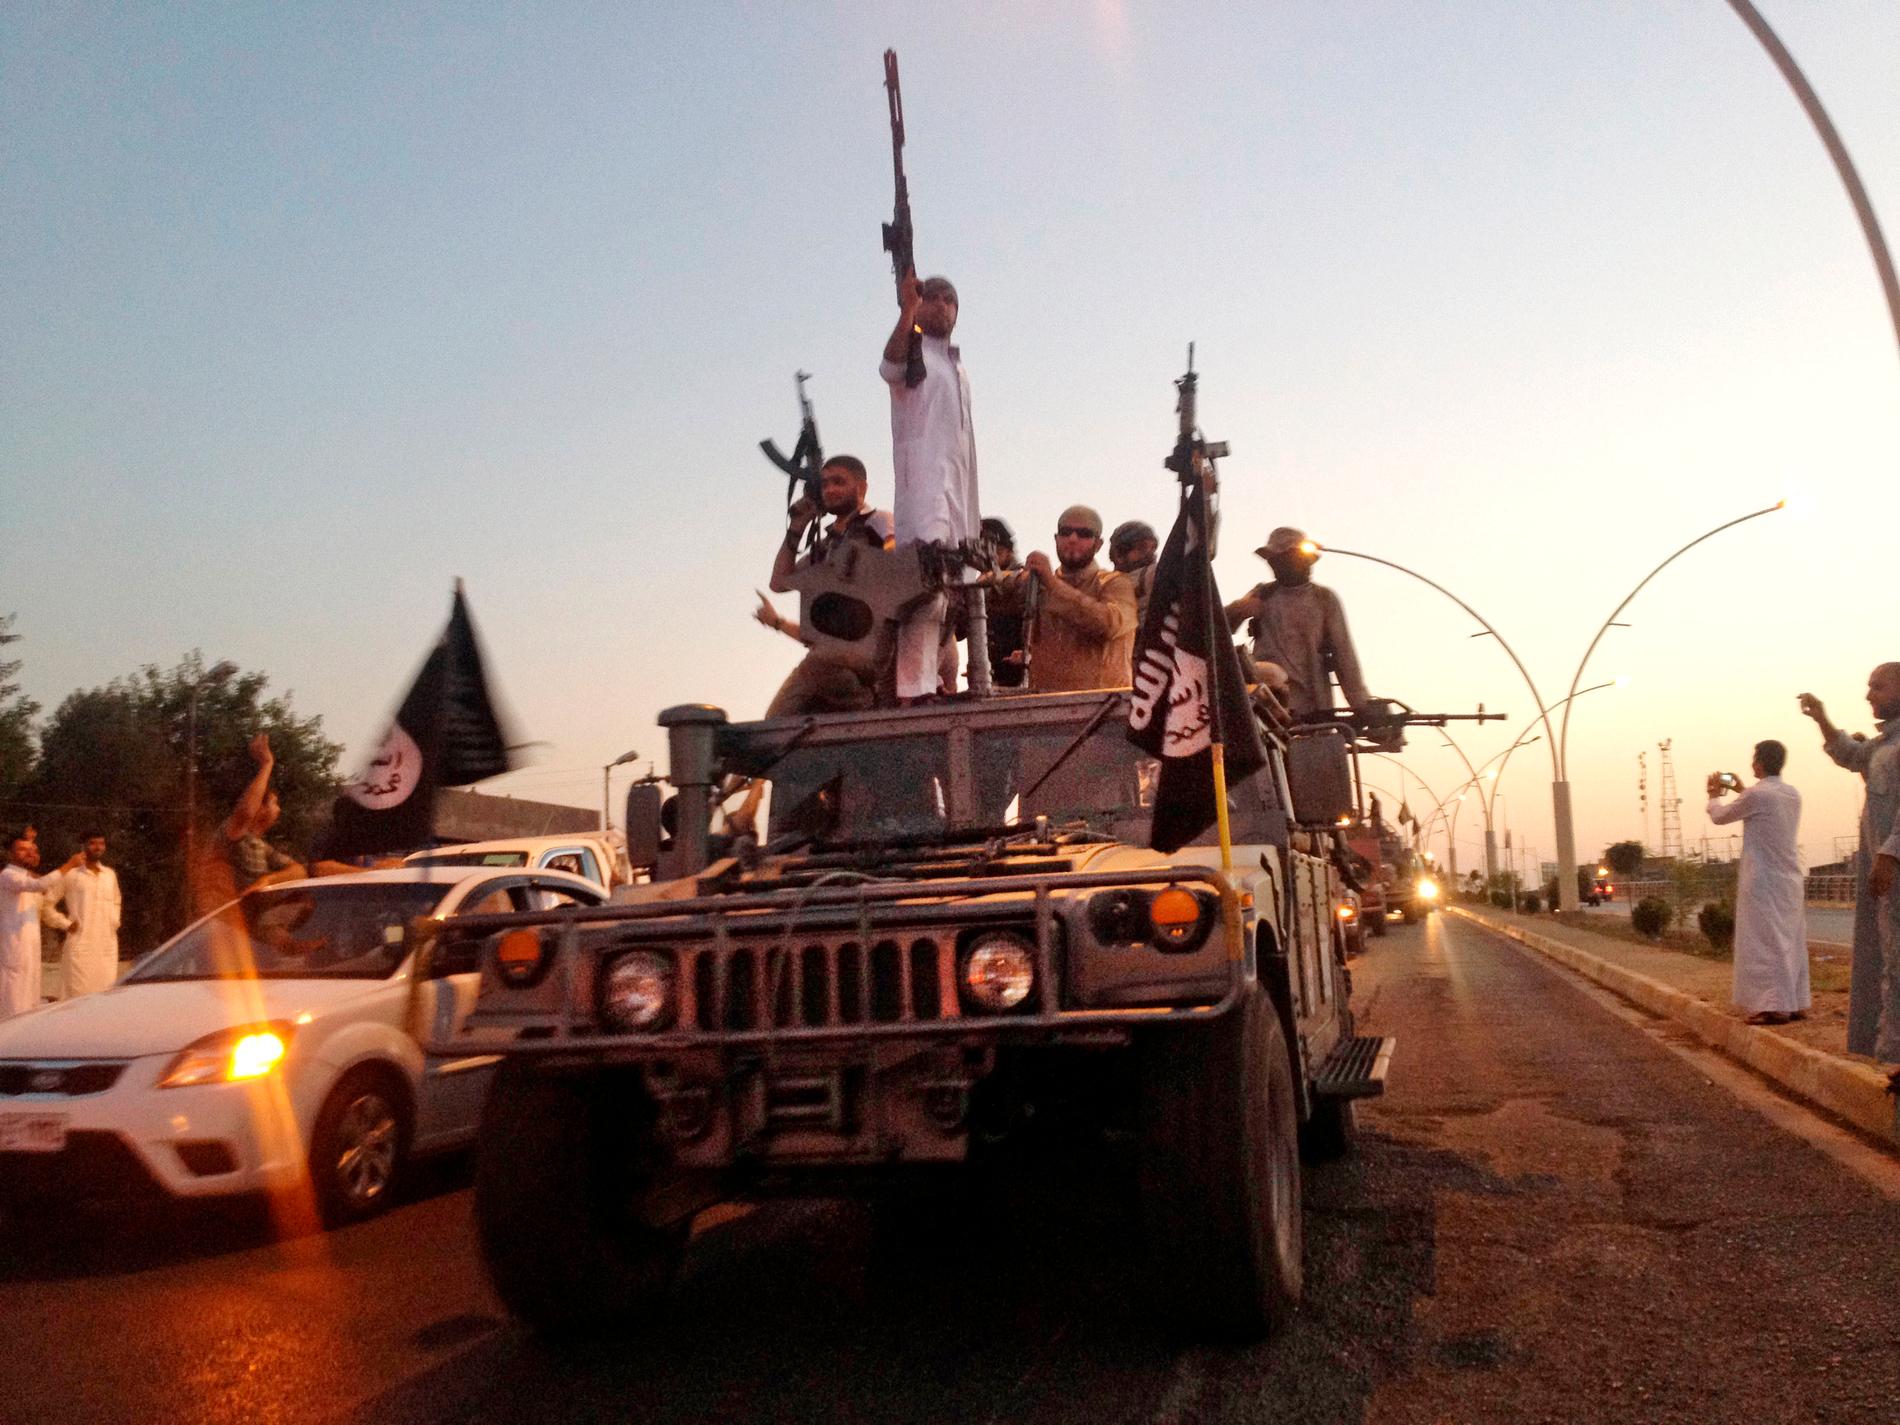 Medlemmar av terrorrörelsen IS kör genom Mosul i Irak. Arkivbild.